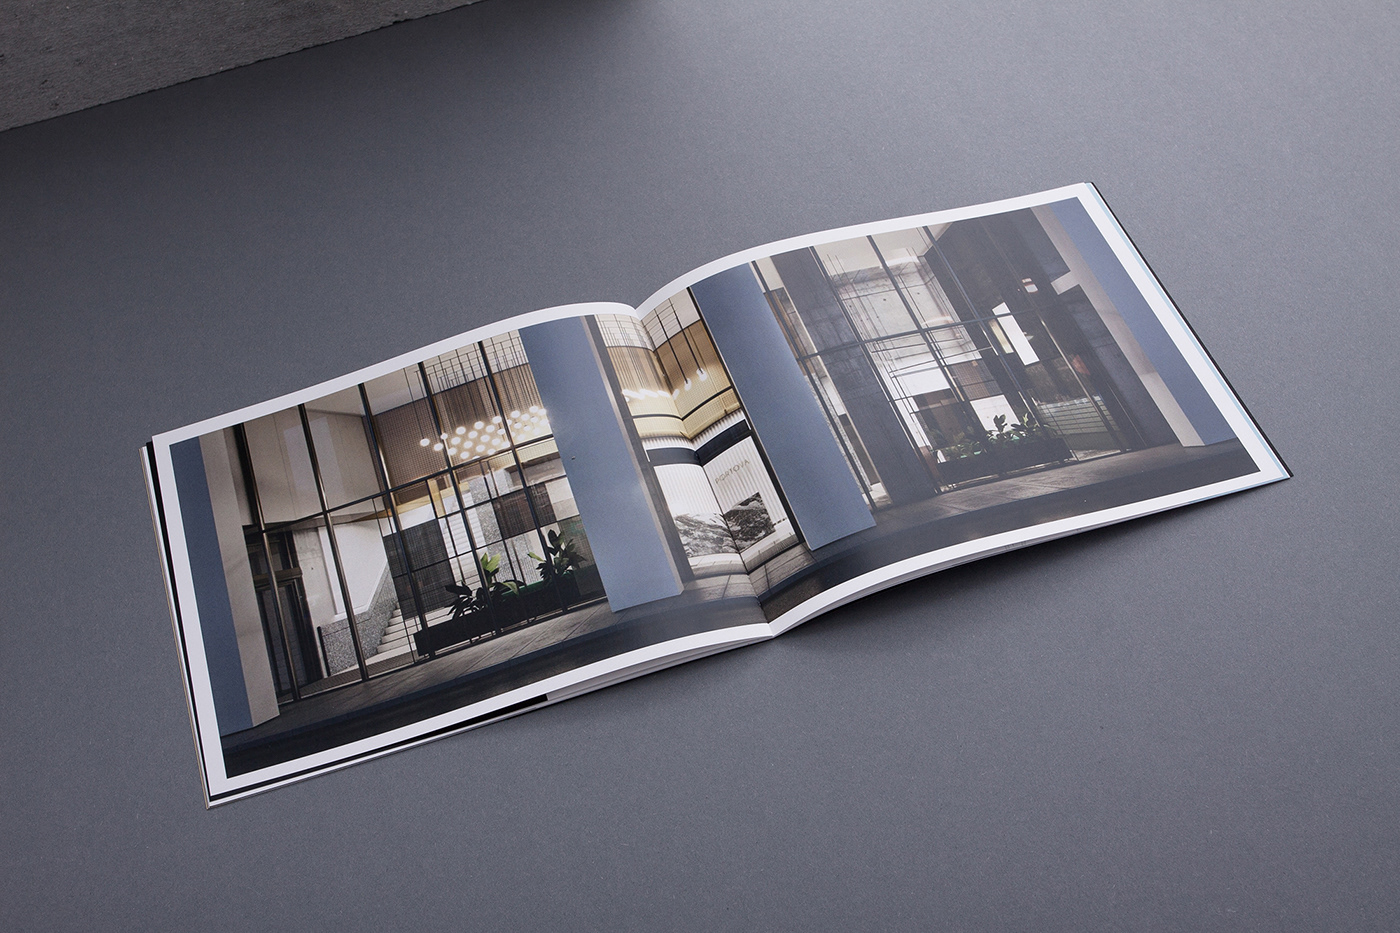 brochure realestate unifikat katalogue luxury apartments hotel publishing   elegance publication